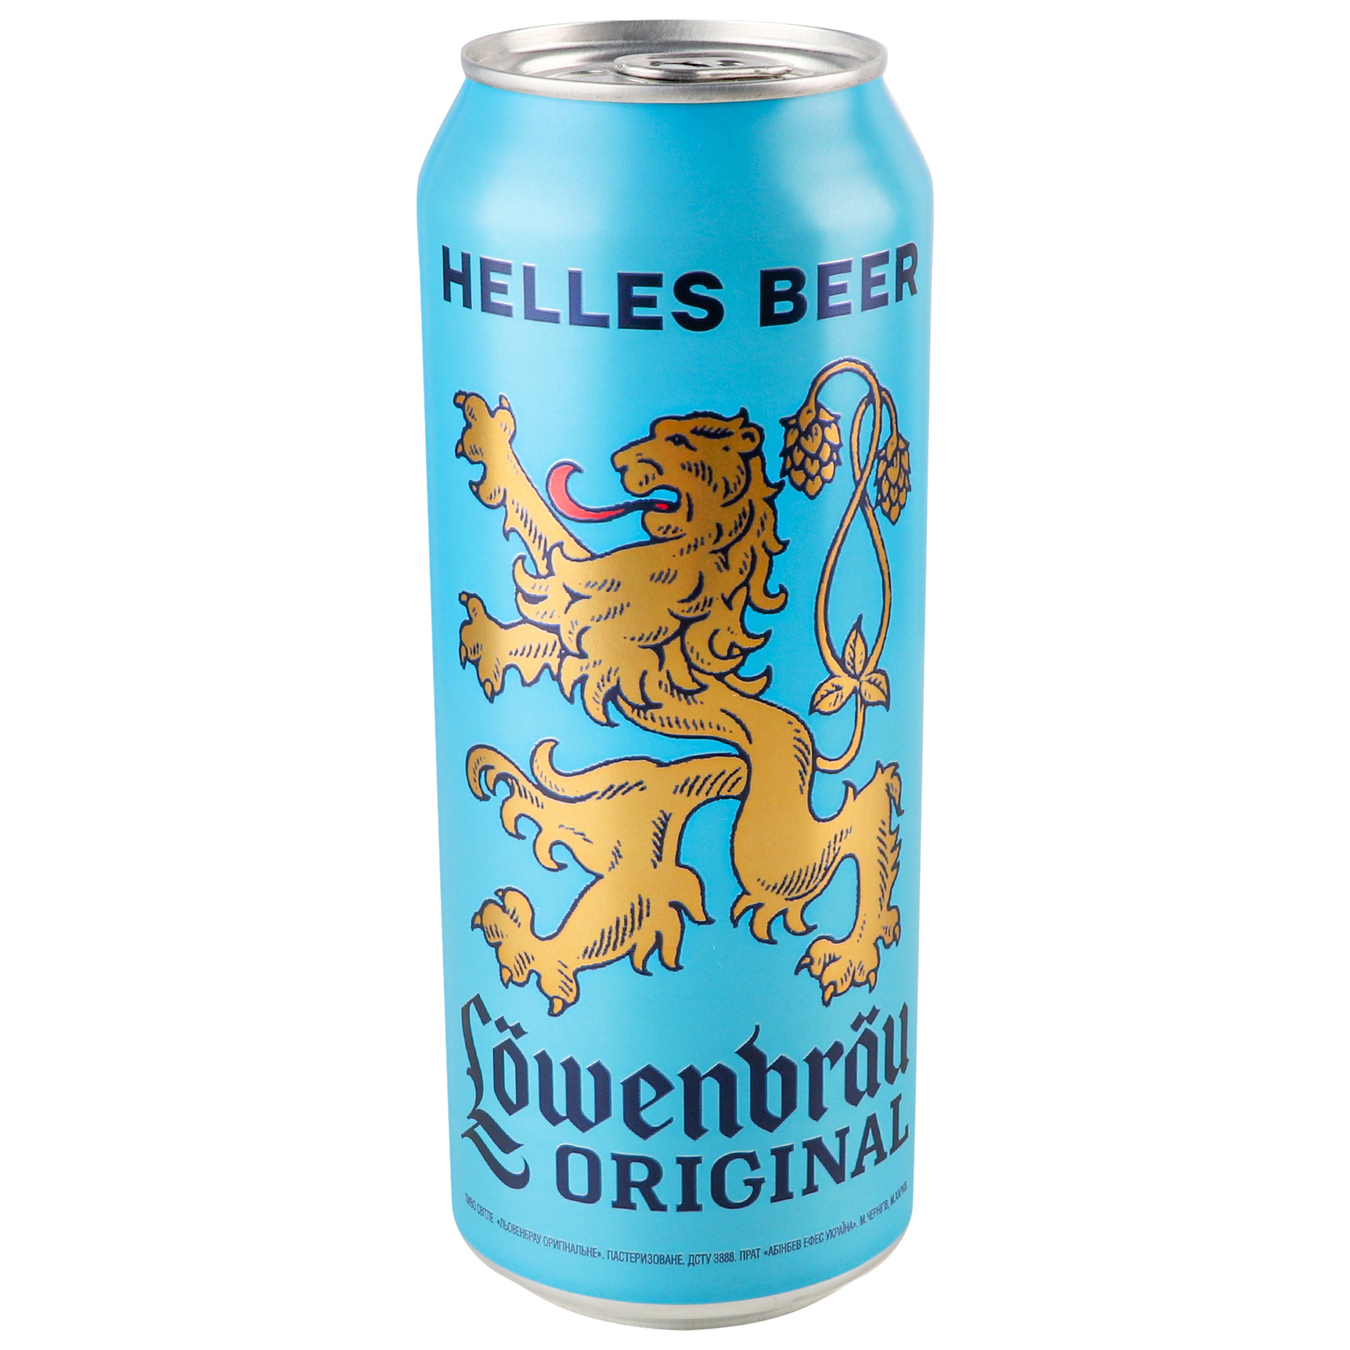 Beer Lowenbrau Original light pasteurized 5.1% 0.5l 4